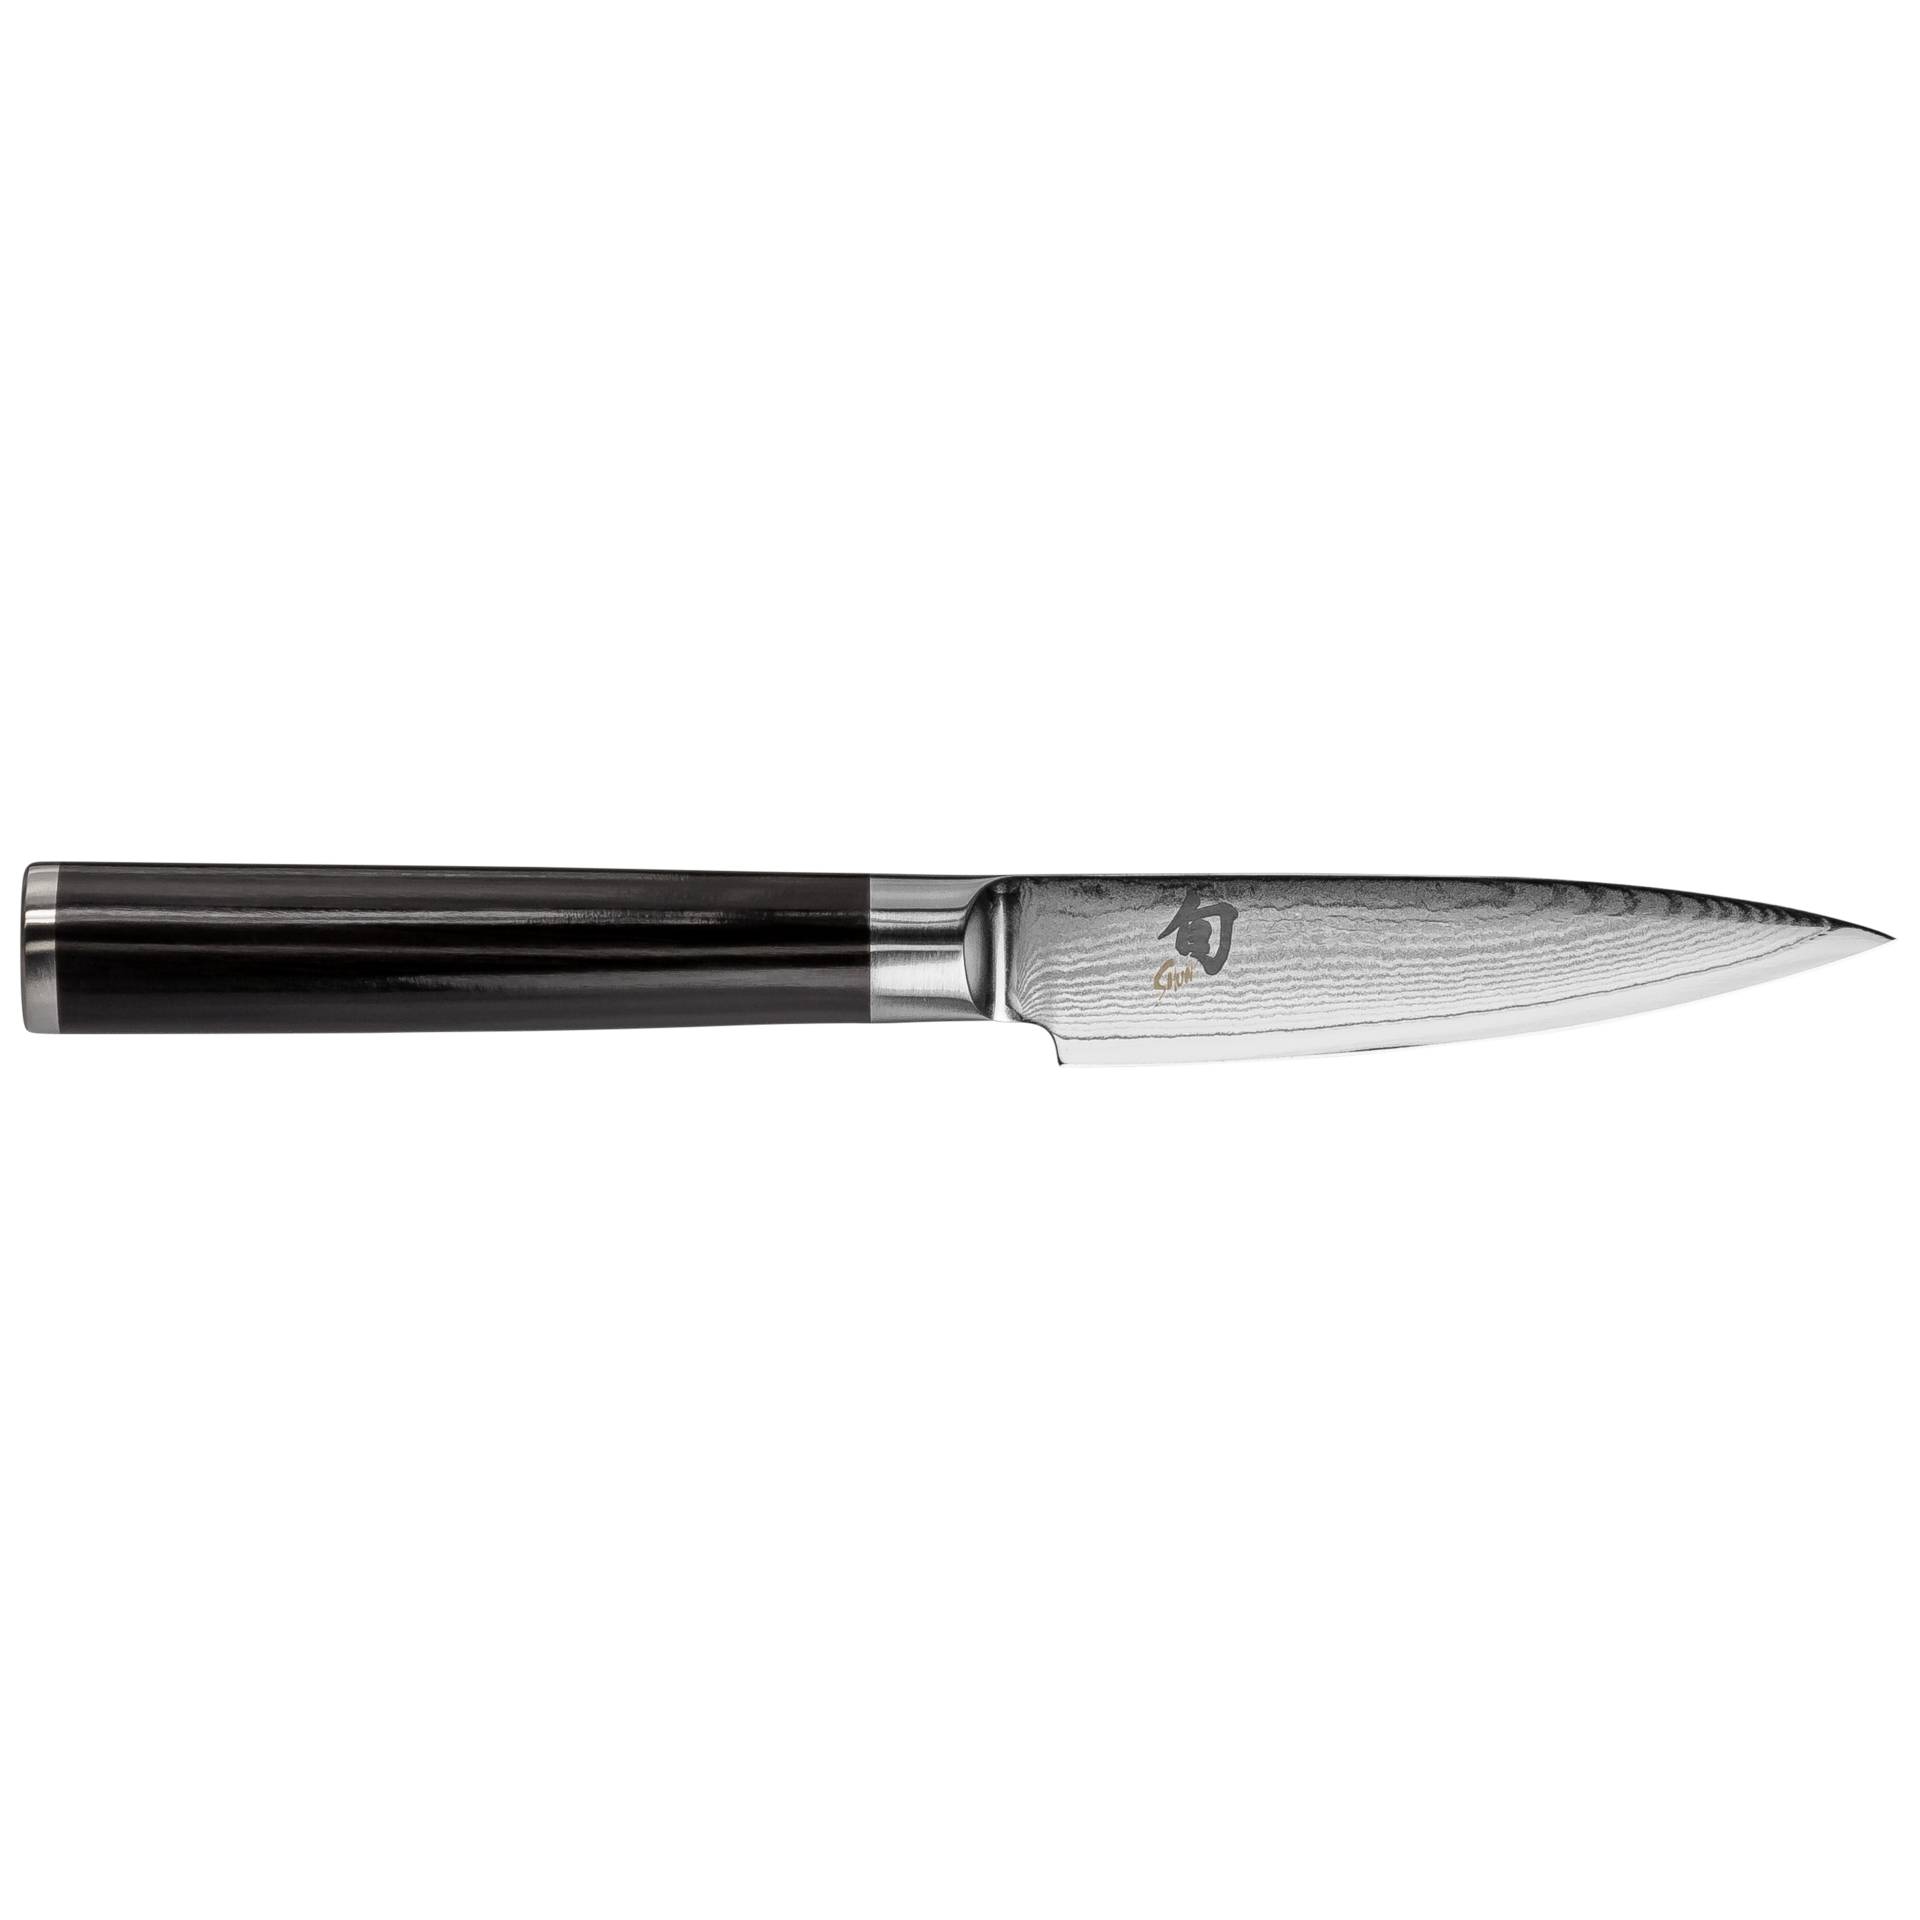 KAI Shun Classic coltello da ufficio 9,0cm